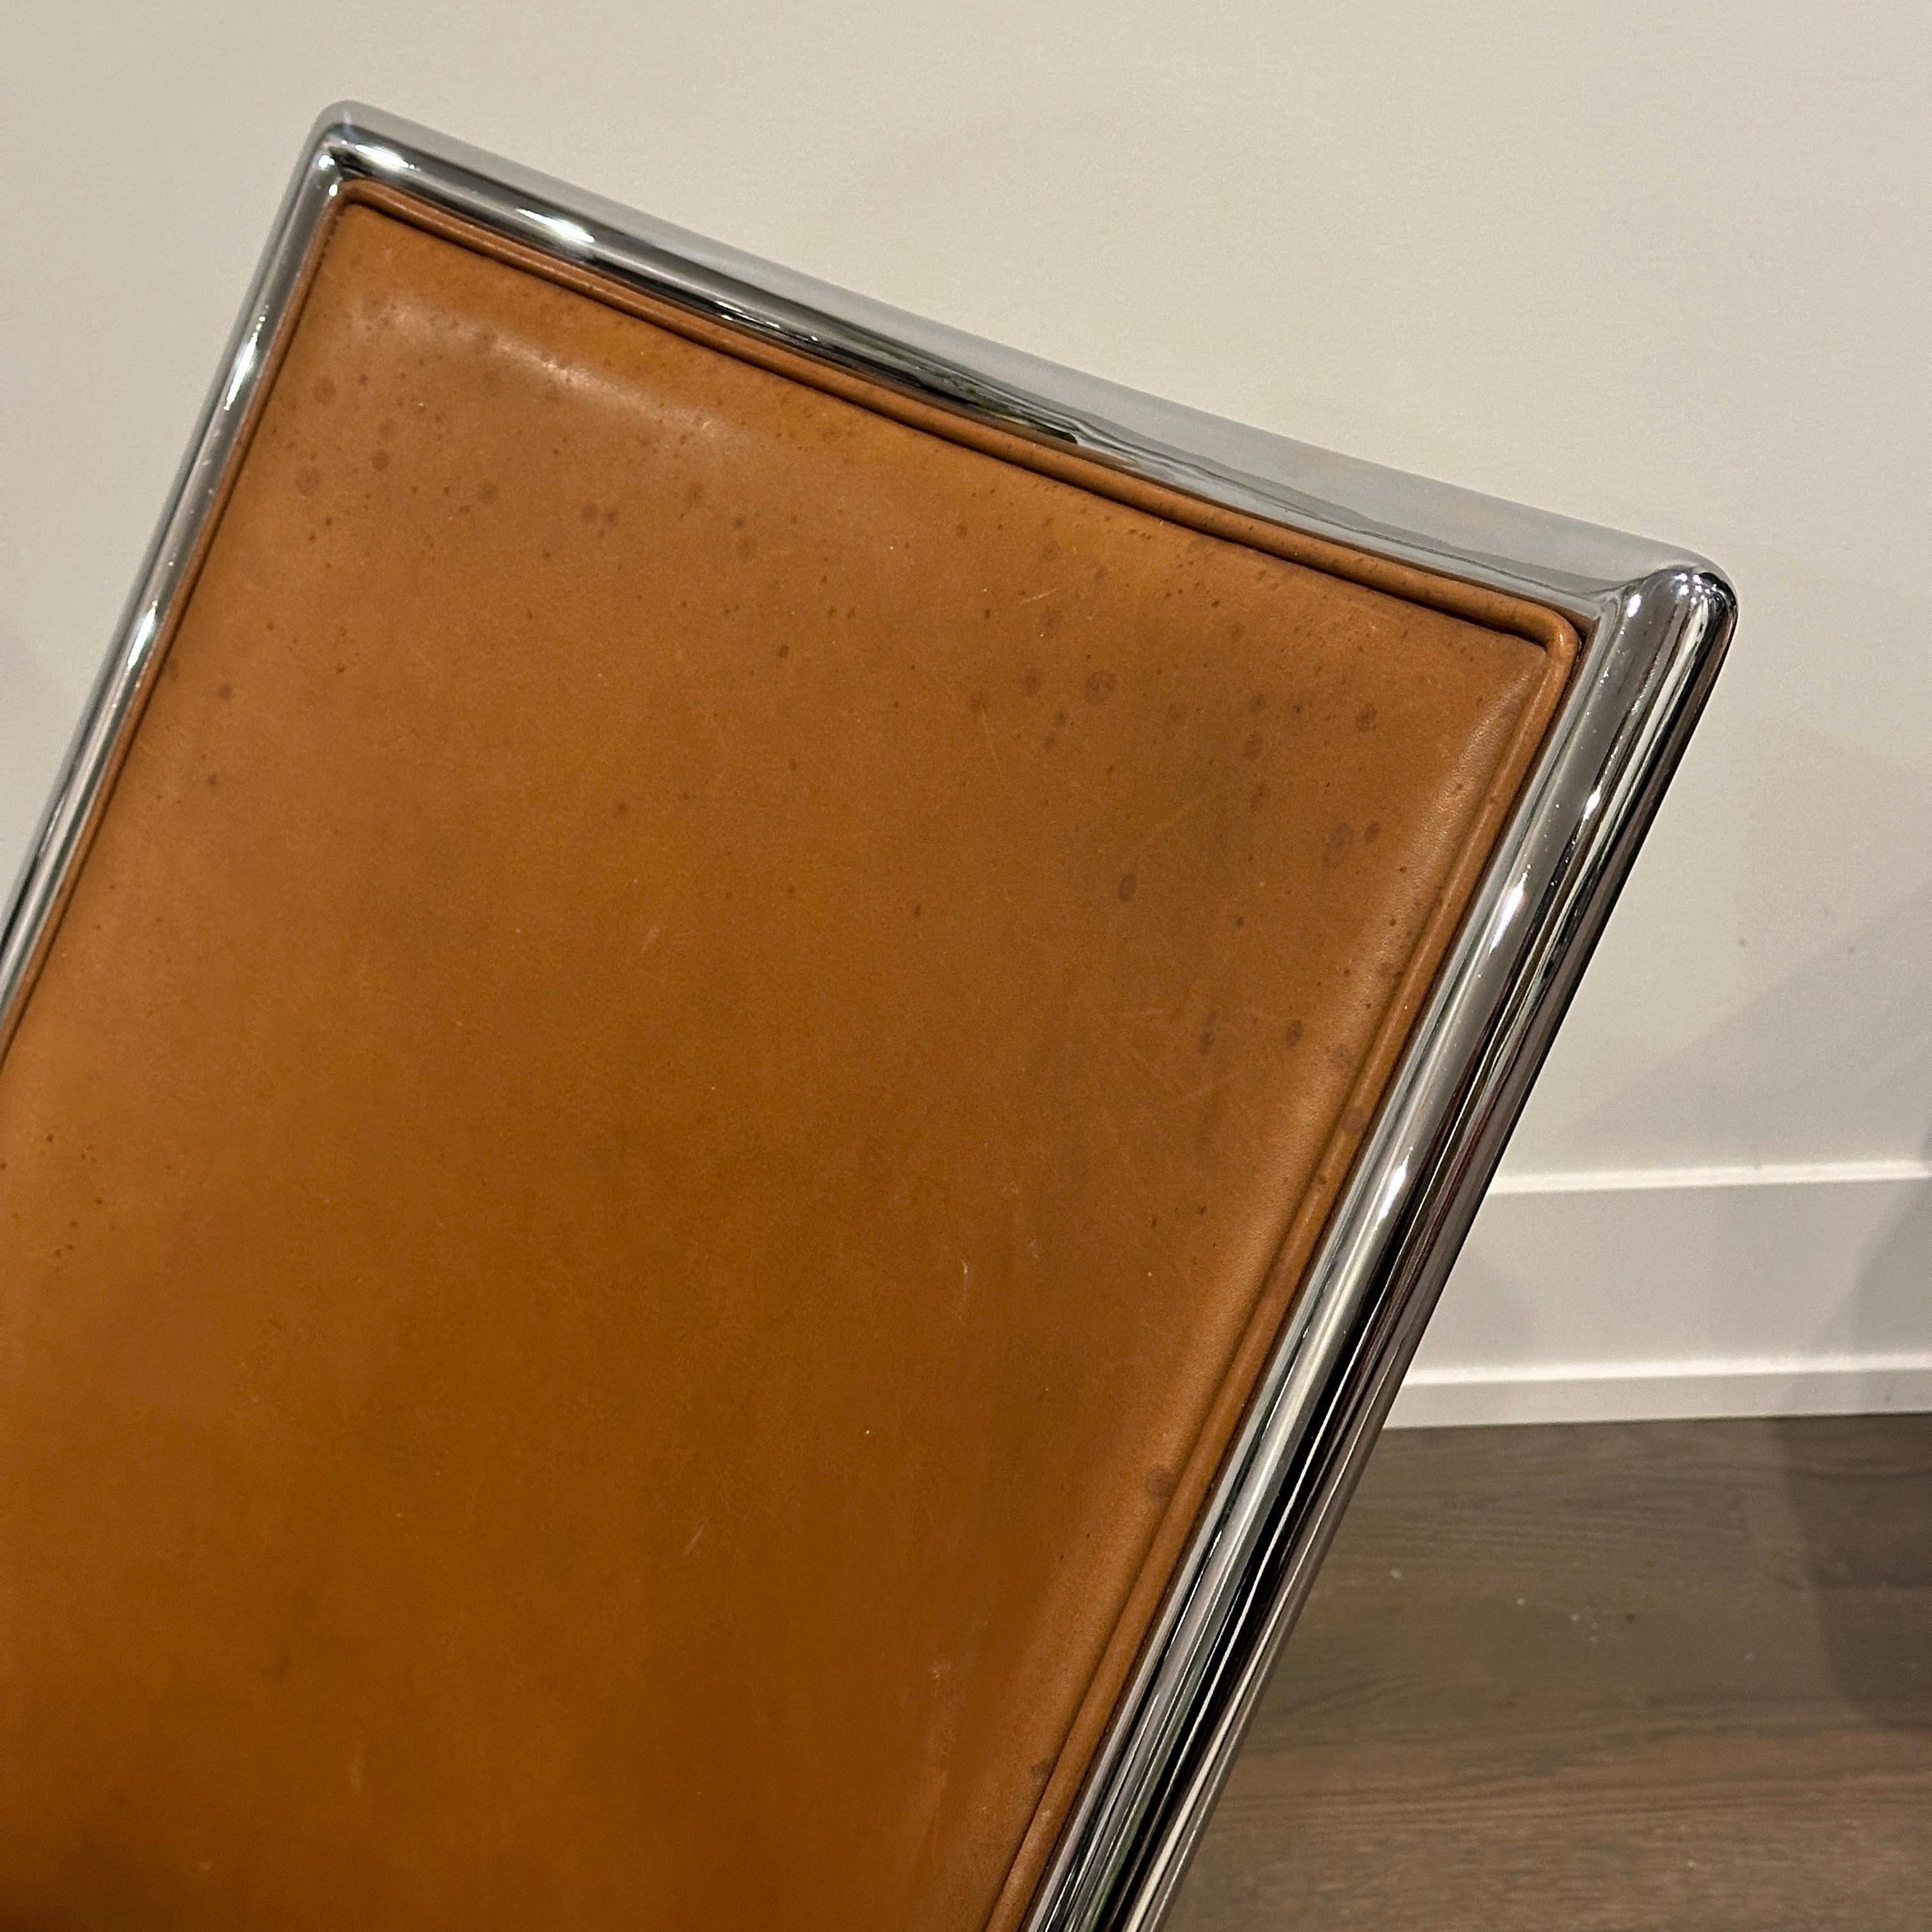 Chaise à ciseaux à structure chromée du designer Ward Bennett, en cuir marron, pièce marquée.

